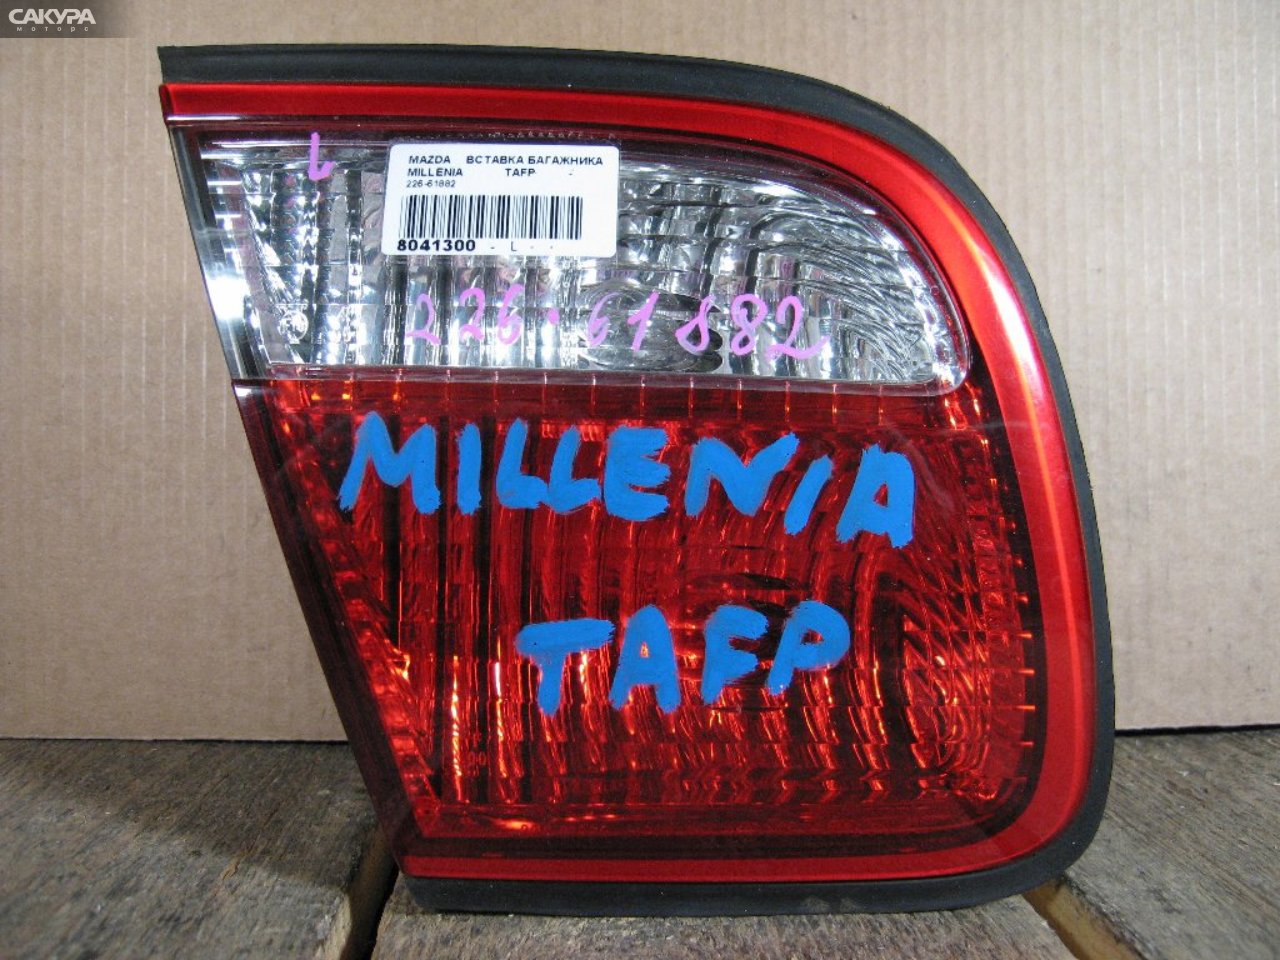 Фонарь вставка багажника левый Mazda Millenia TAFP 226-61882: купить в Сакура Абакан.